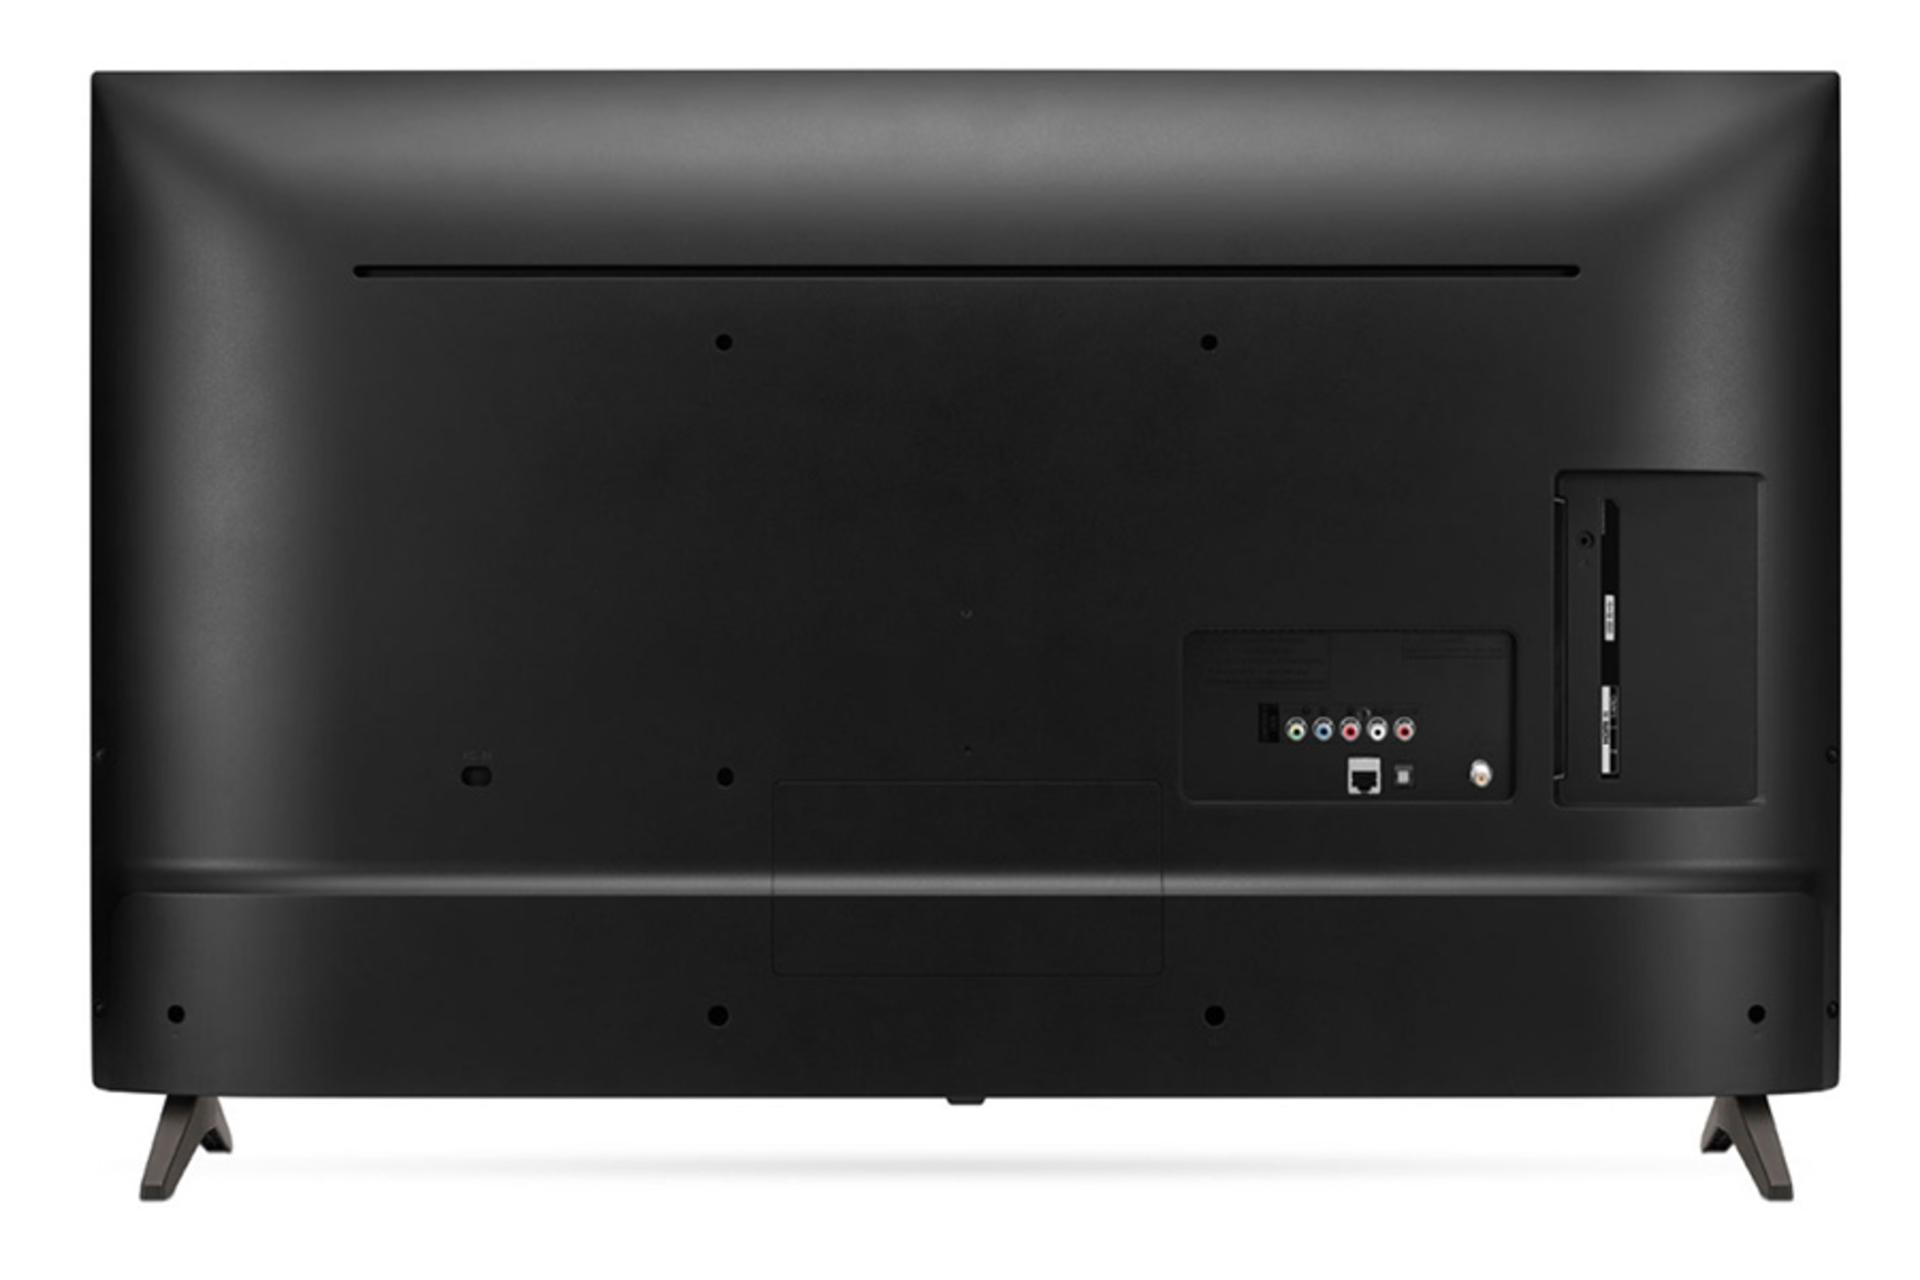 نمای پشت تلویزیون ال جی LK5700 مدل 49 اینچ و نمایش پورت ها